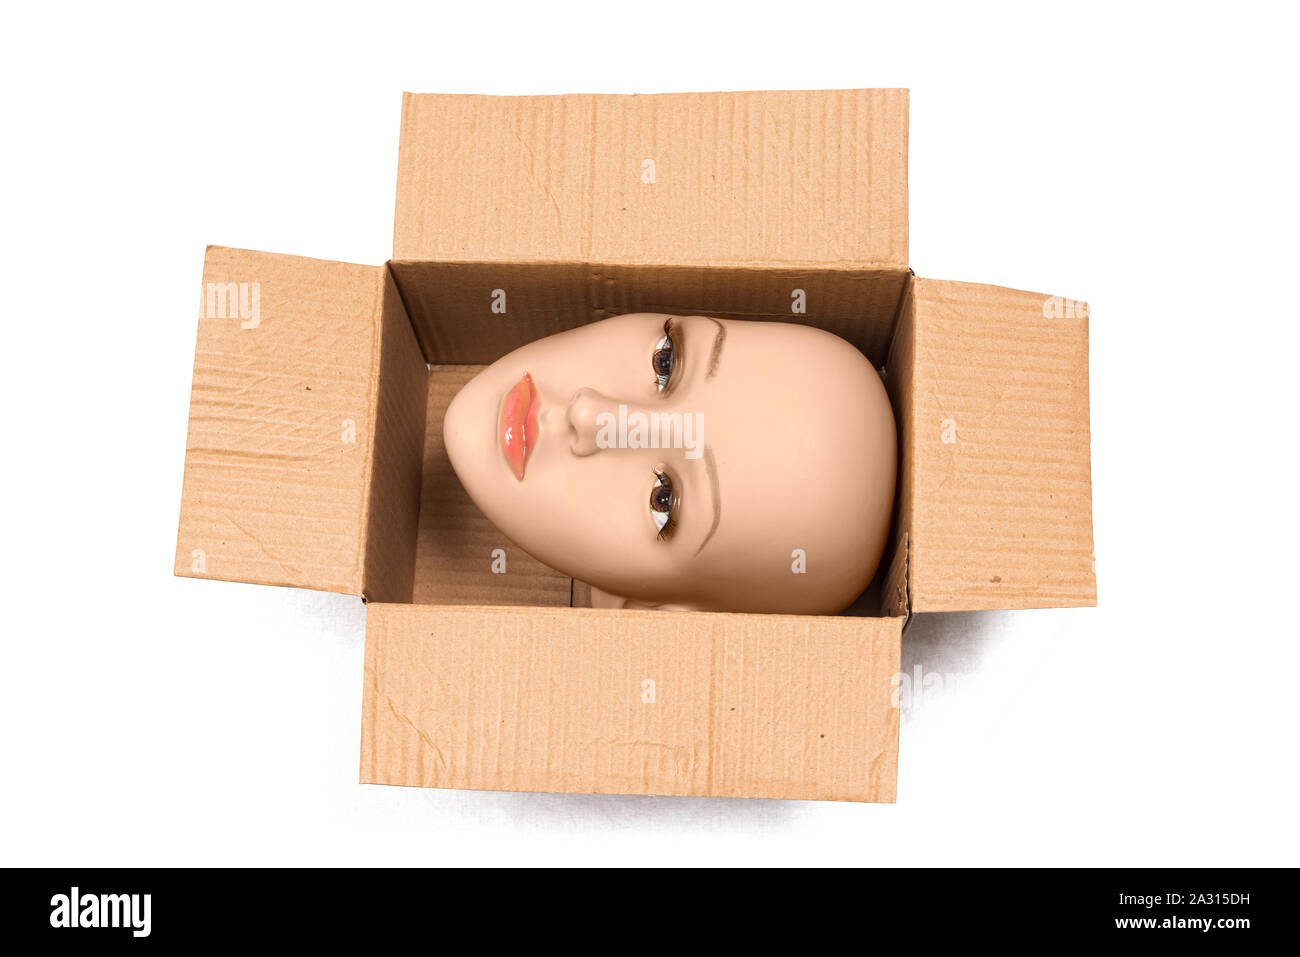 Horizontale Schuß einer Glatze Frau Schaufensterpuppe Kopf innerhalb einer offenen Karton mit Schatten. Die Box wird so gedreht, dass die Kopf seitlich ist. Weißer Hintergrund Stockfoto